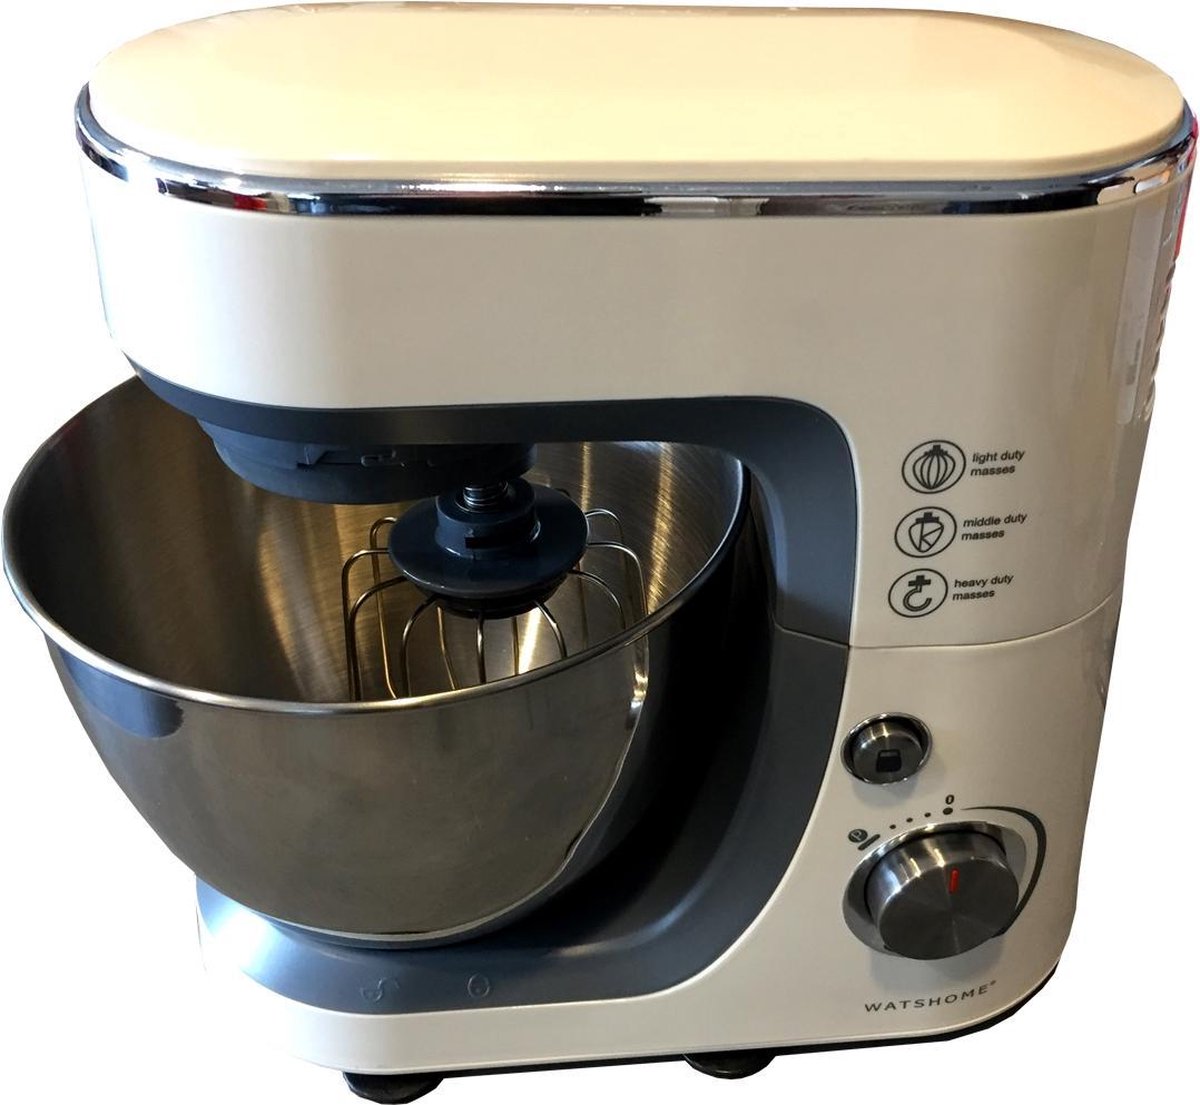 climax Zijdelings decaan Keukenmachine - Robot Culinaire - Whatshome - 3,5L - 520 WATT | bol.com